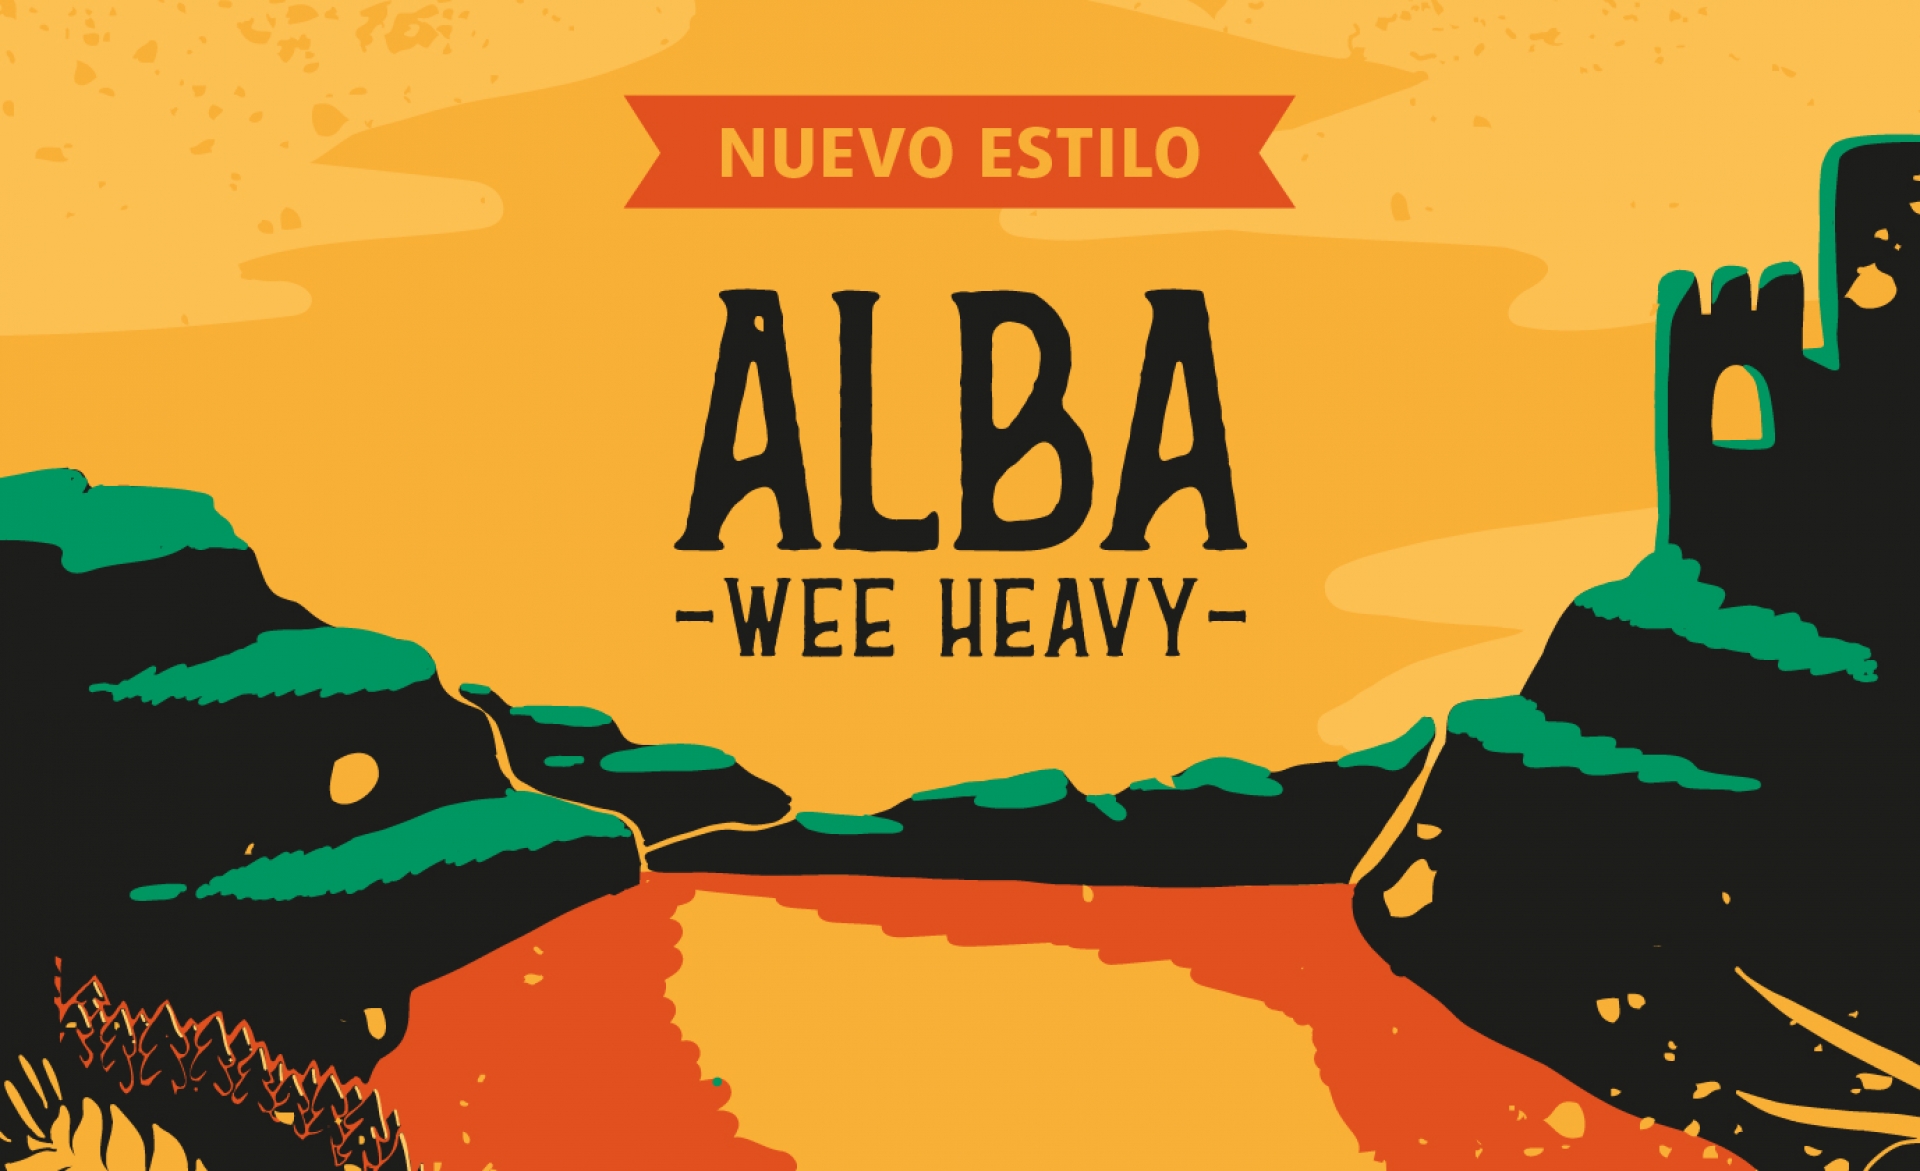 ALBA Wee Heavy, nuevo estilo!